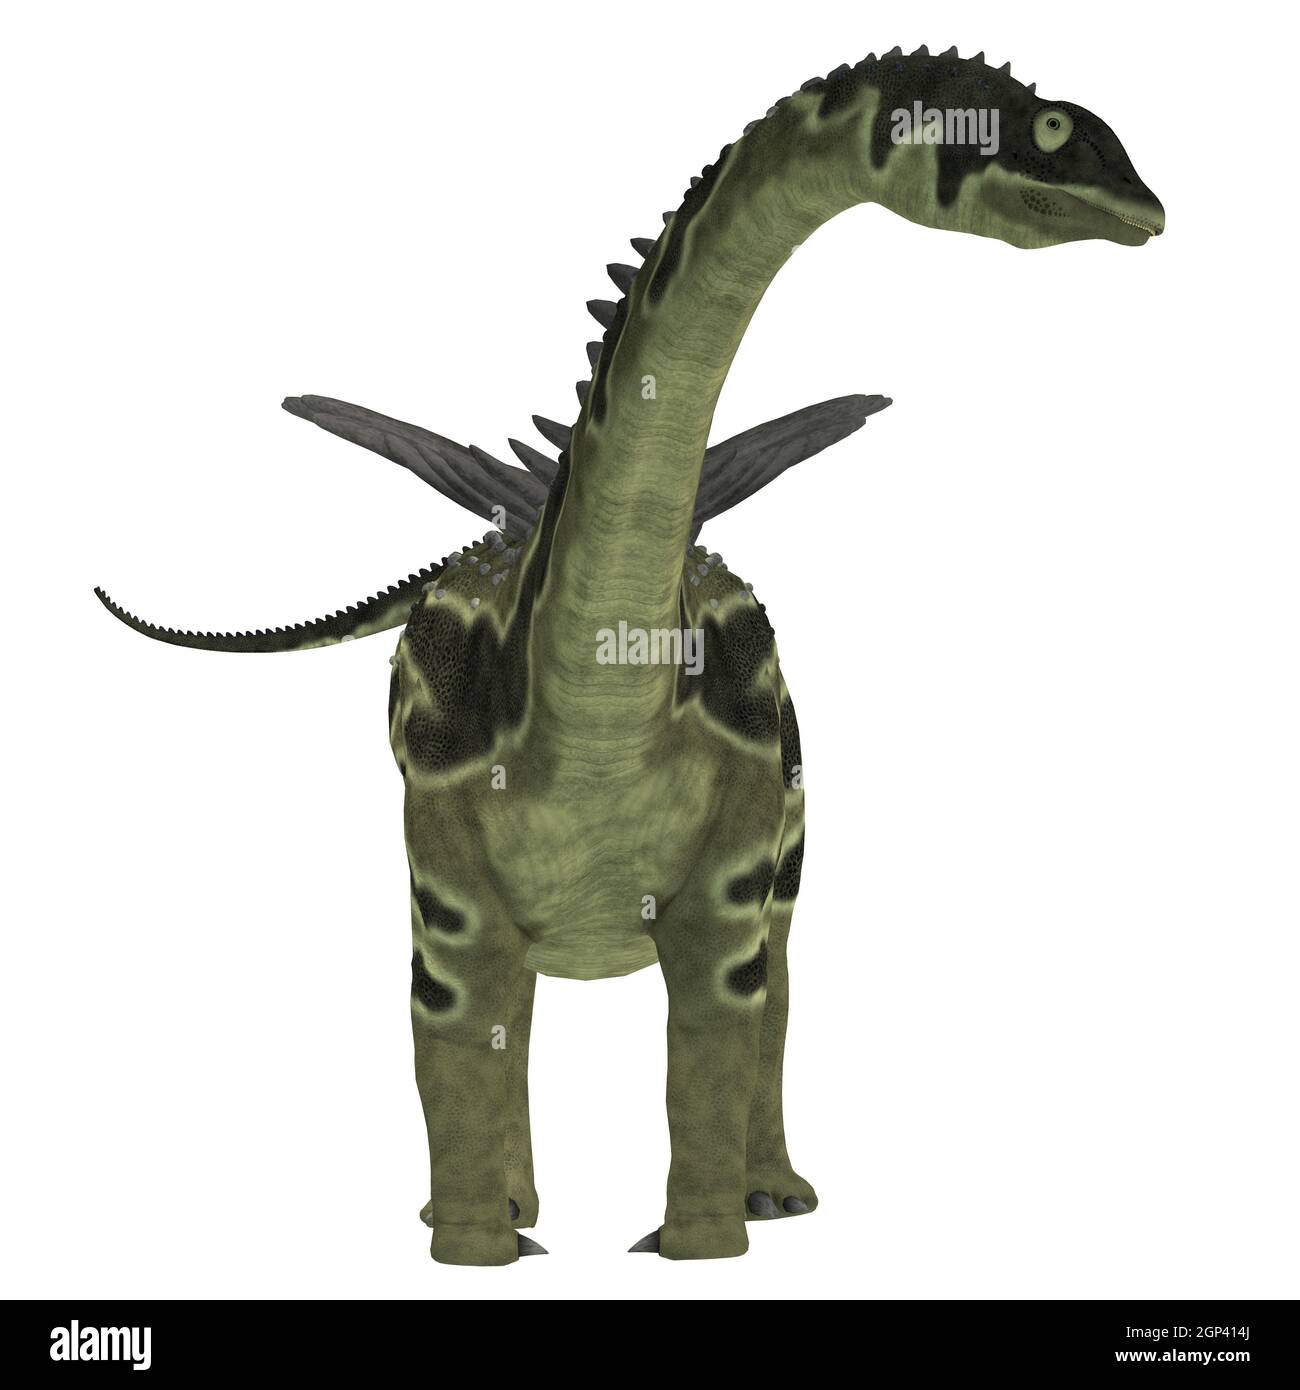 Agustinia era un erbivoro sauropod dinosaur che vivevano in Sud America nel Cretaceo. Foto Stock